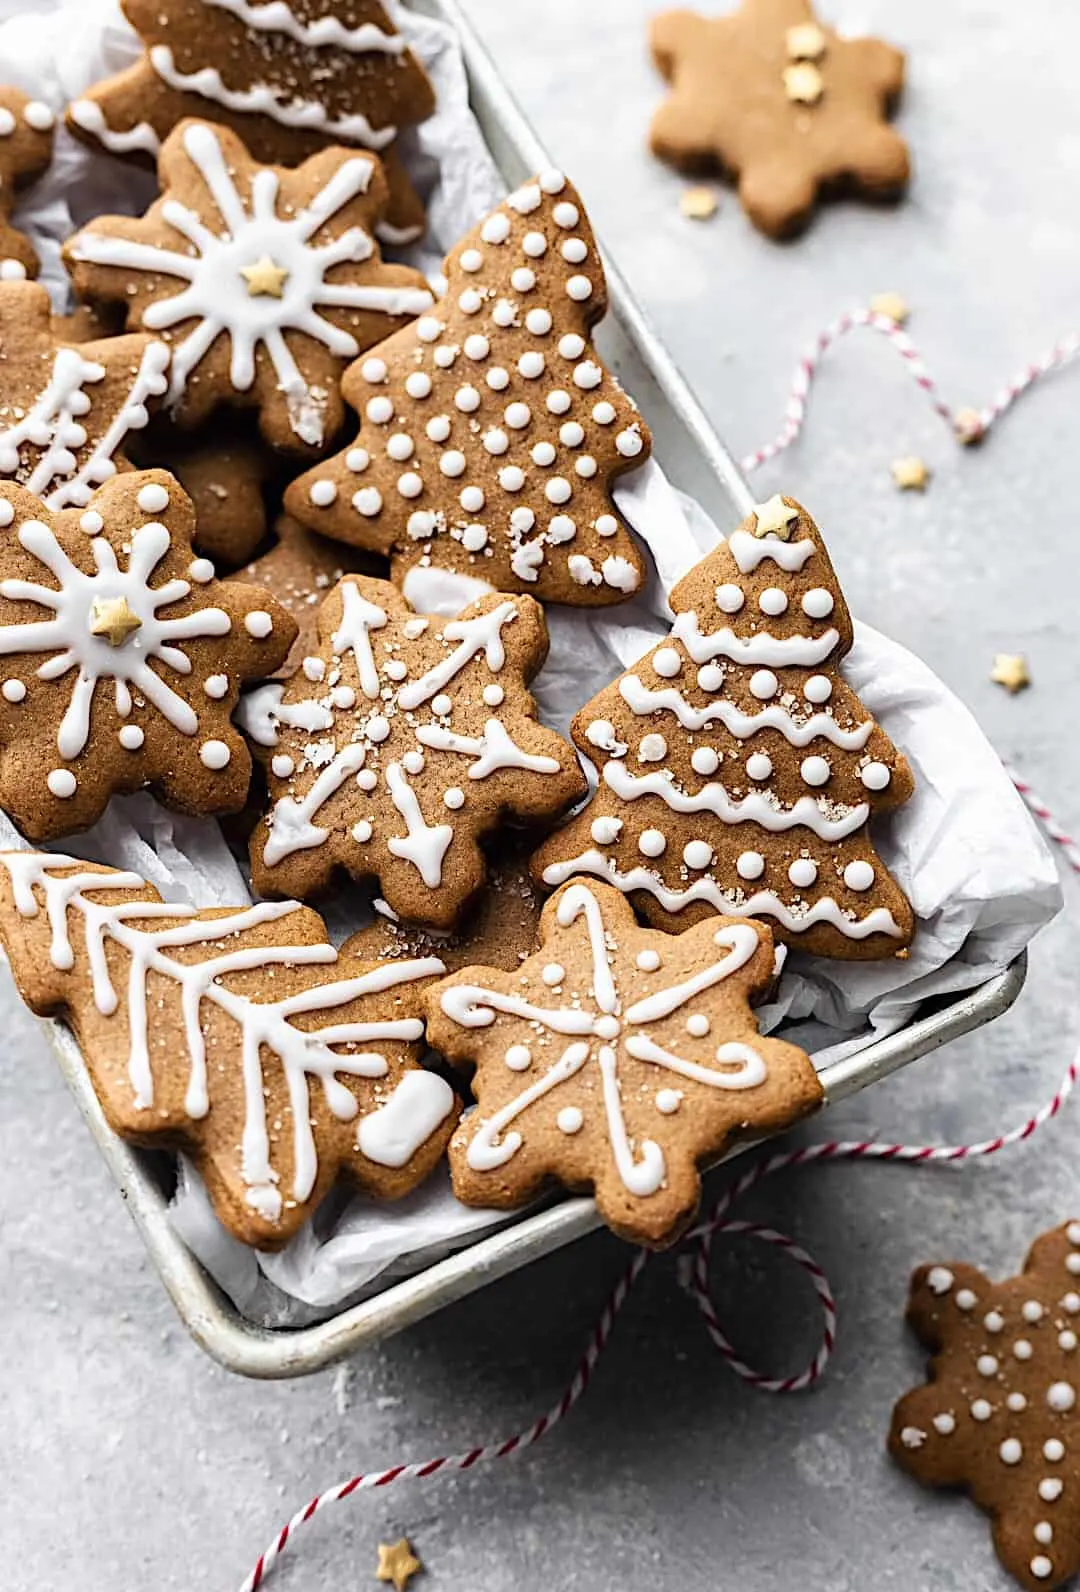 Easy Vegan Gingerbread Cookies #gingerbread #chistmas #vegan #cookies #biscuits #dairyfree